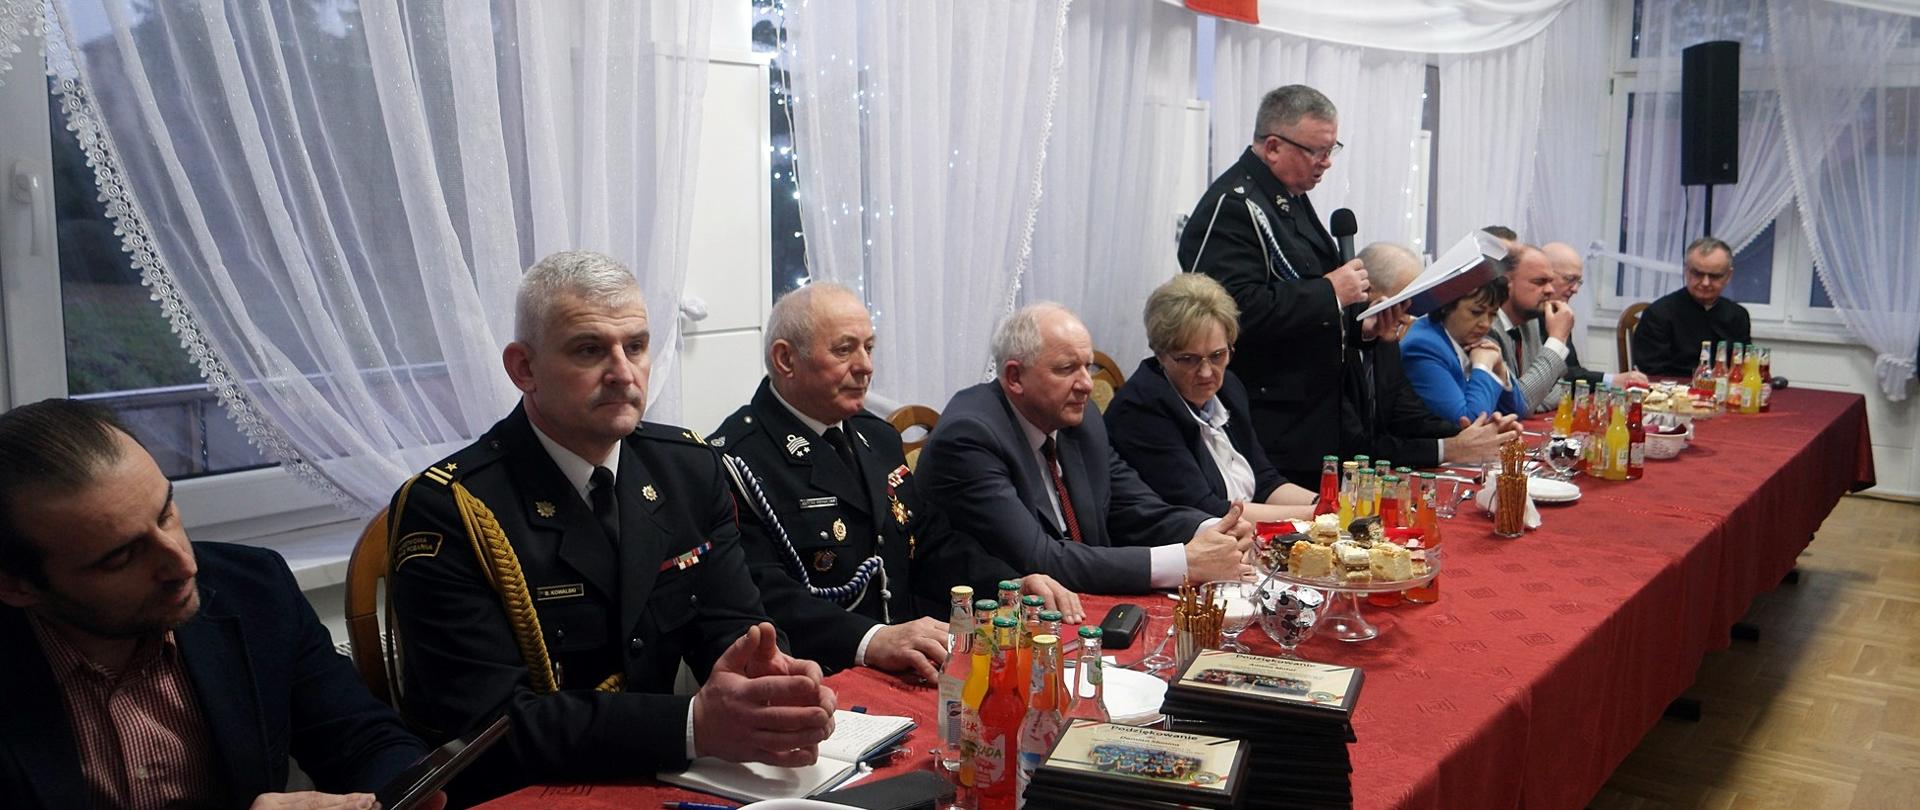 Widok boczny, zdjęcie zbiorowe zaproszonych gości siedzących przy wspólnym stole. Jedna osoba stoi i przemawia do mikrofonu.